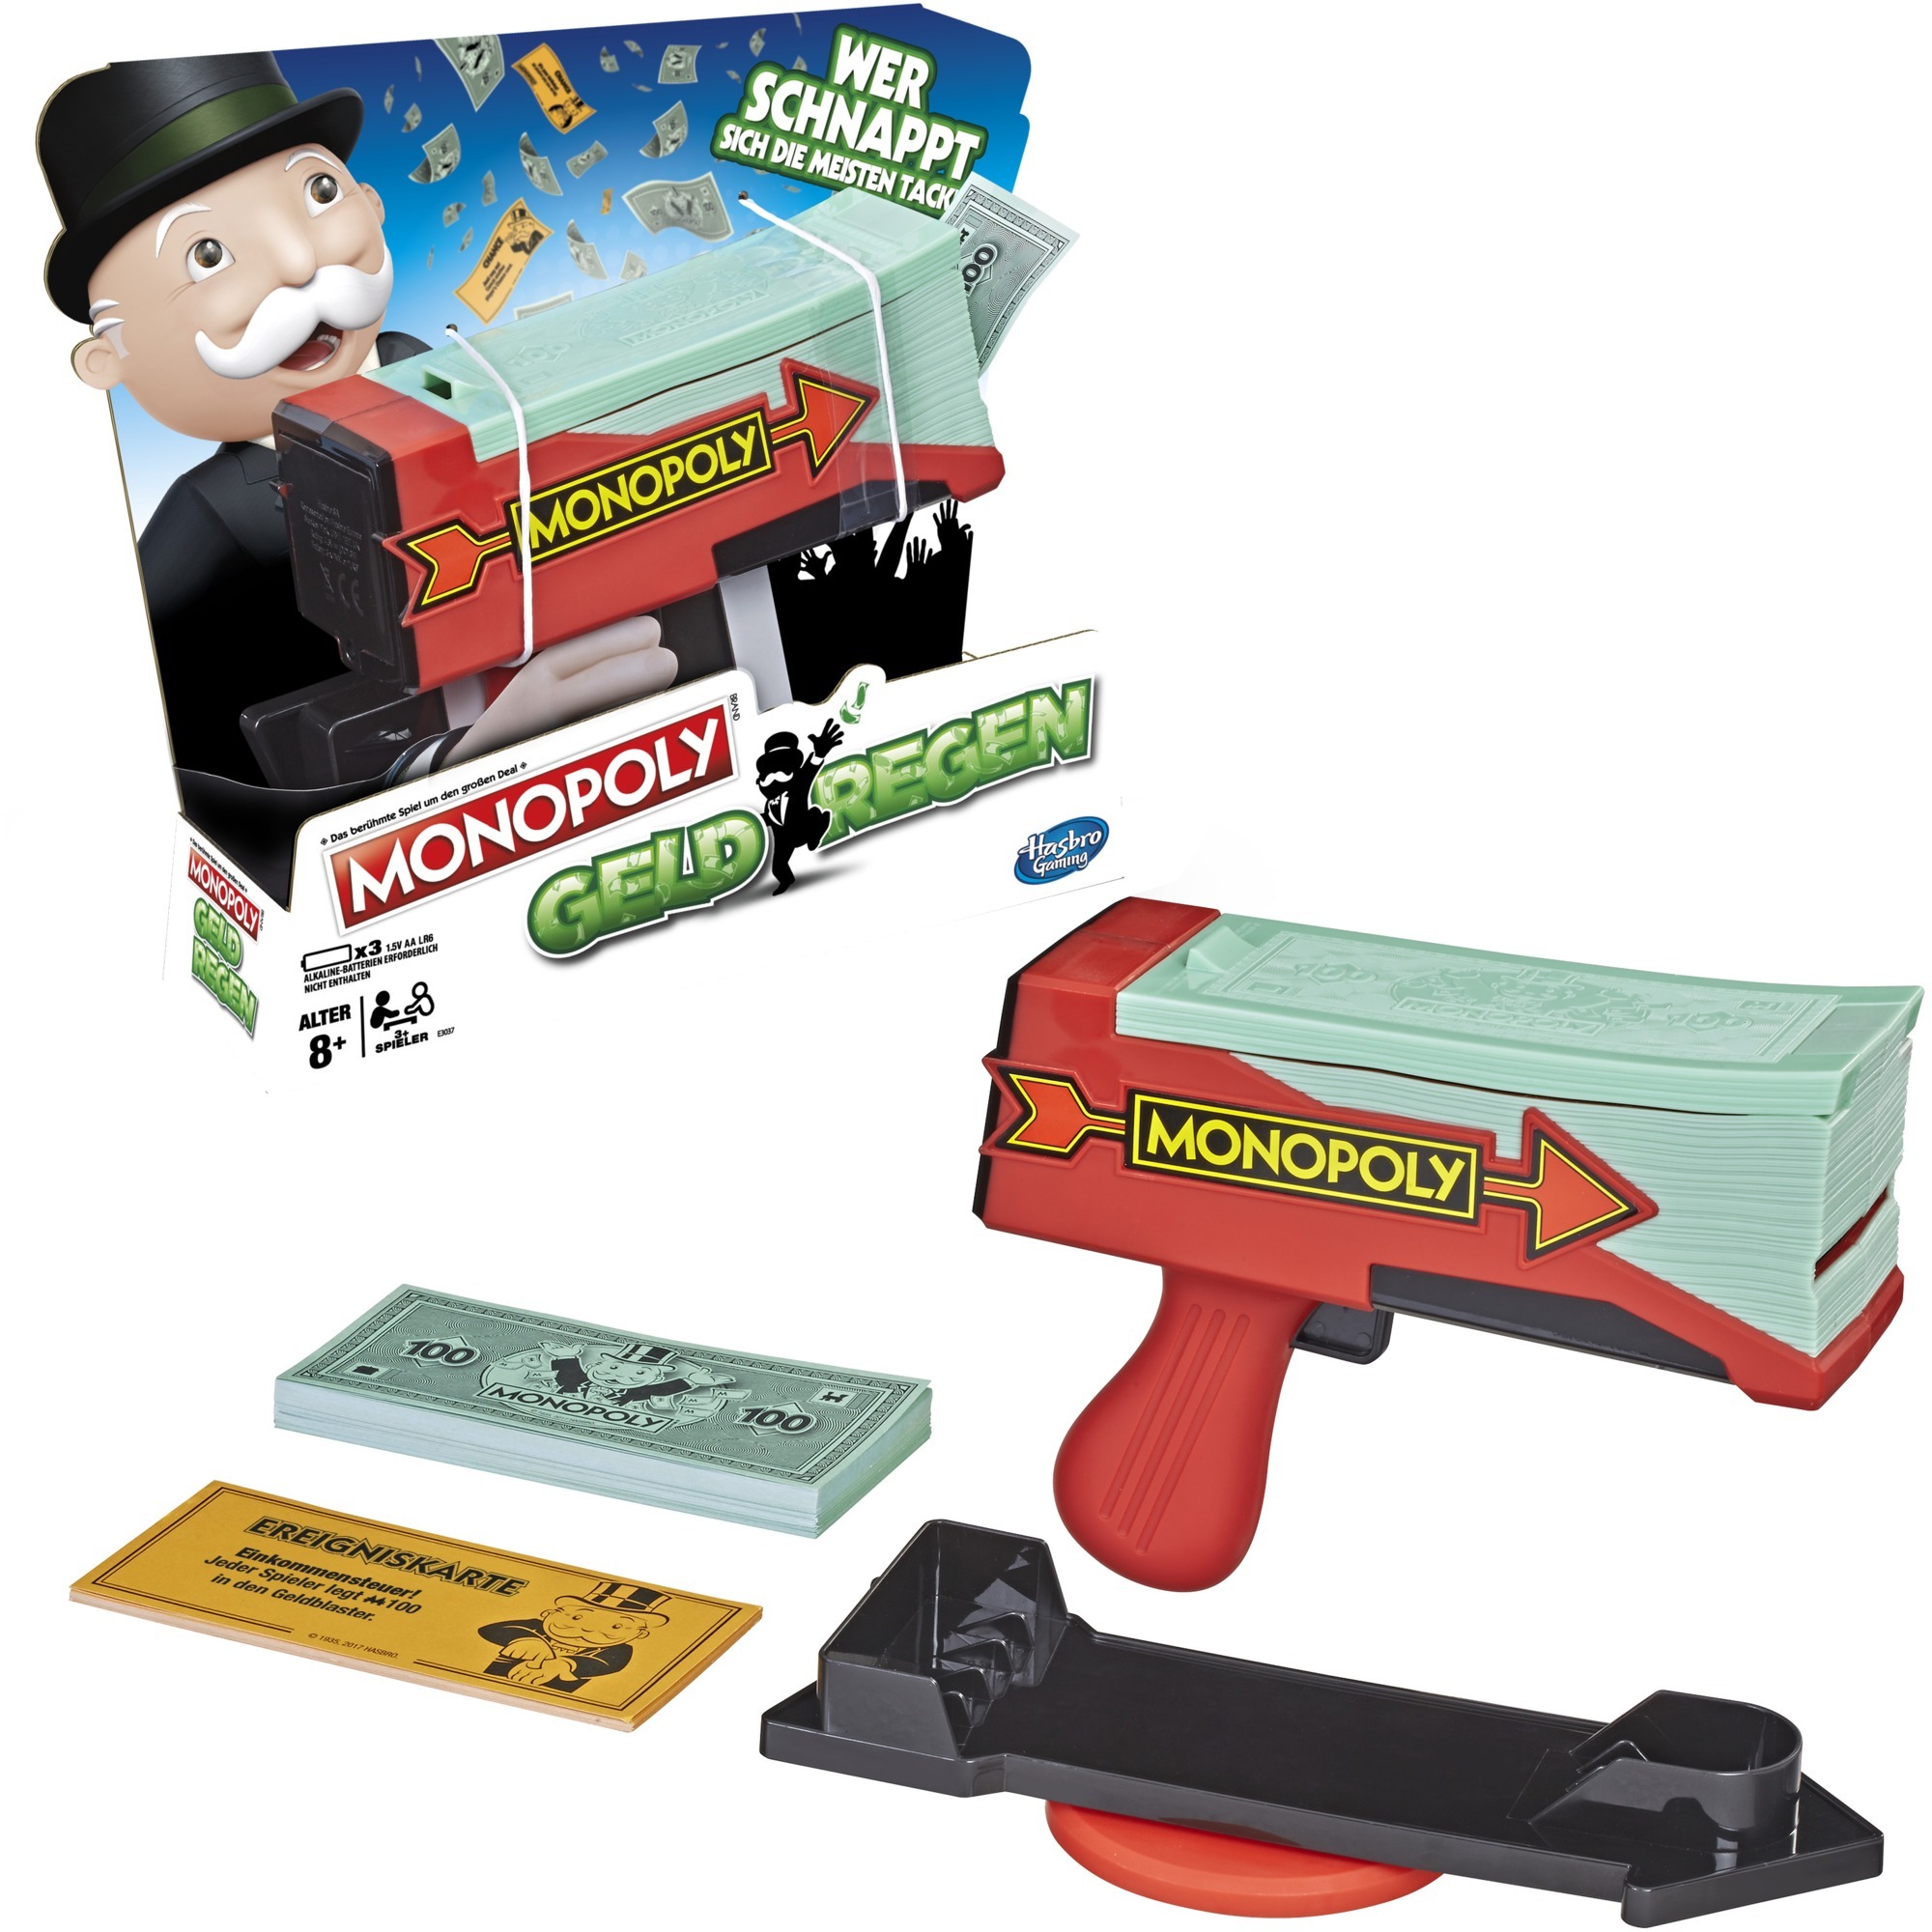 Image of Alternate - Monopoly Geldregen, Brettspiel online einkaufen bei Alternate